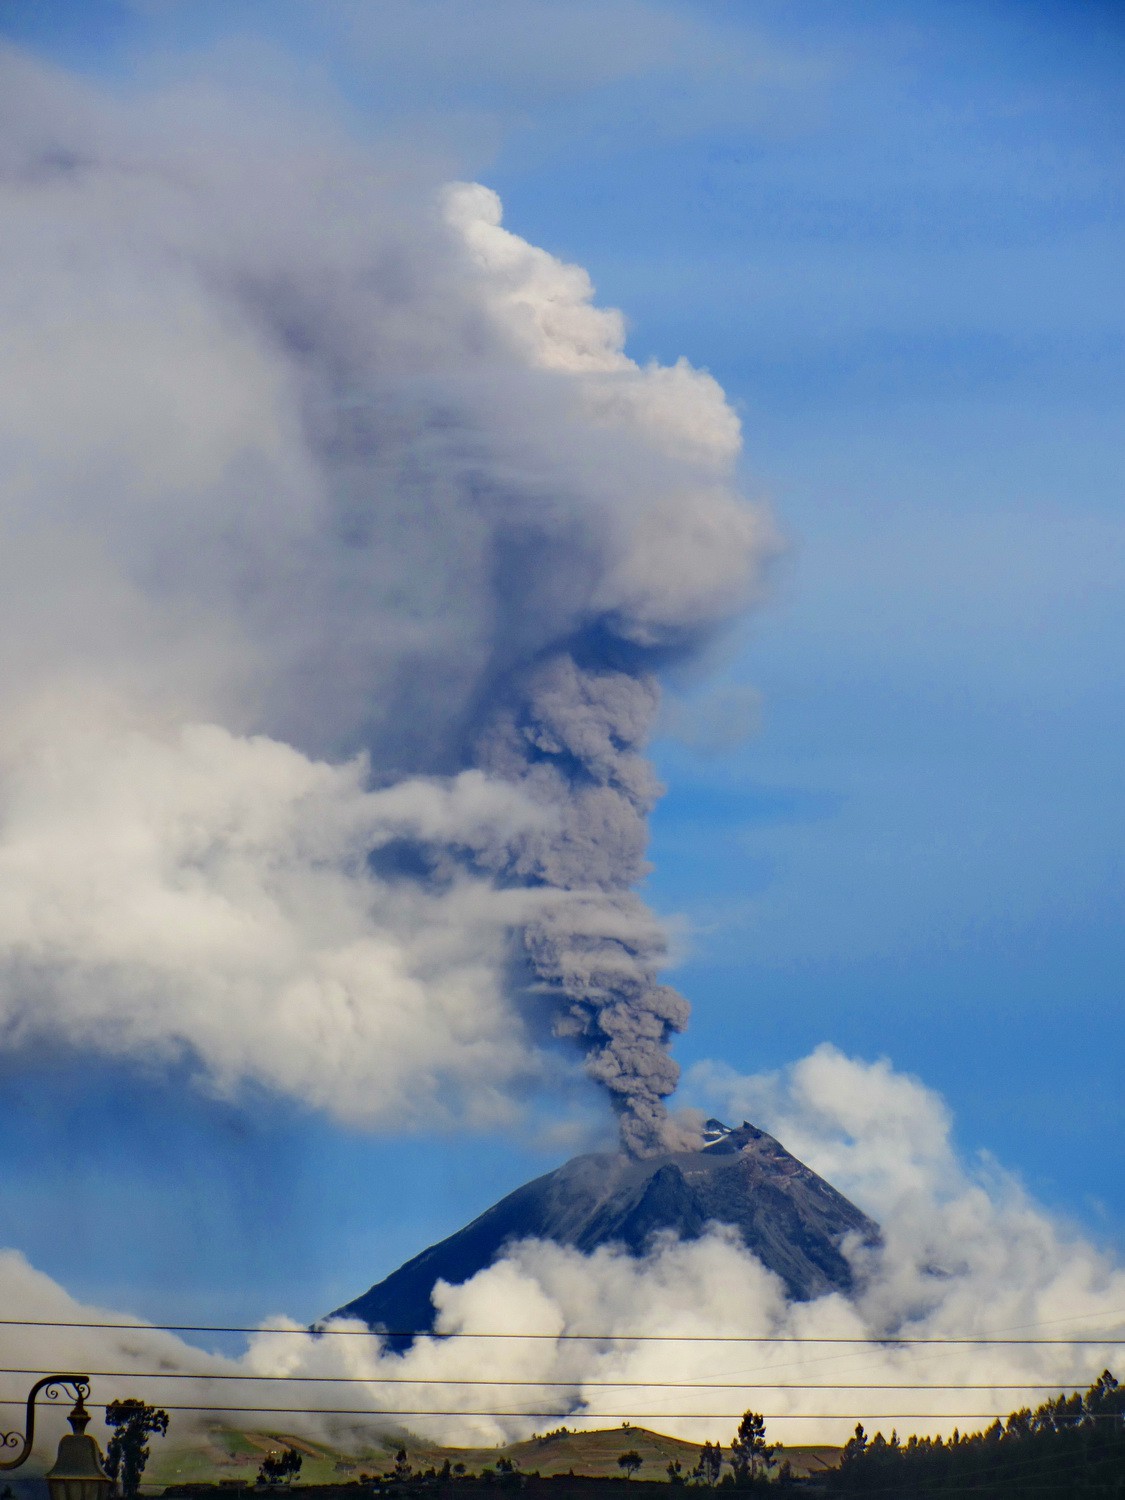 Busy Volcan Tungurahua, seen from Mocha on the Panamericana